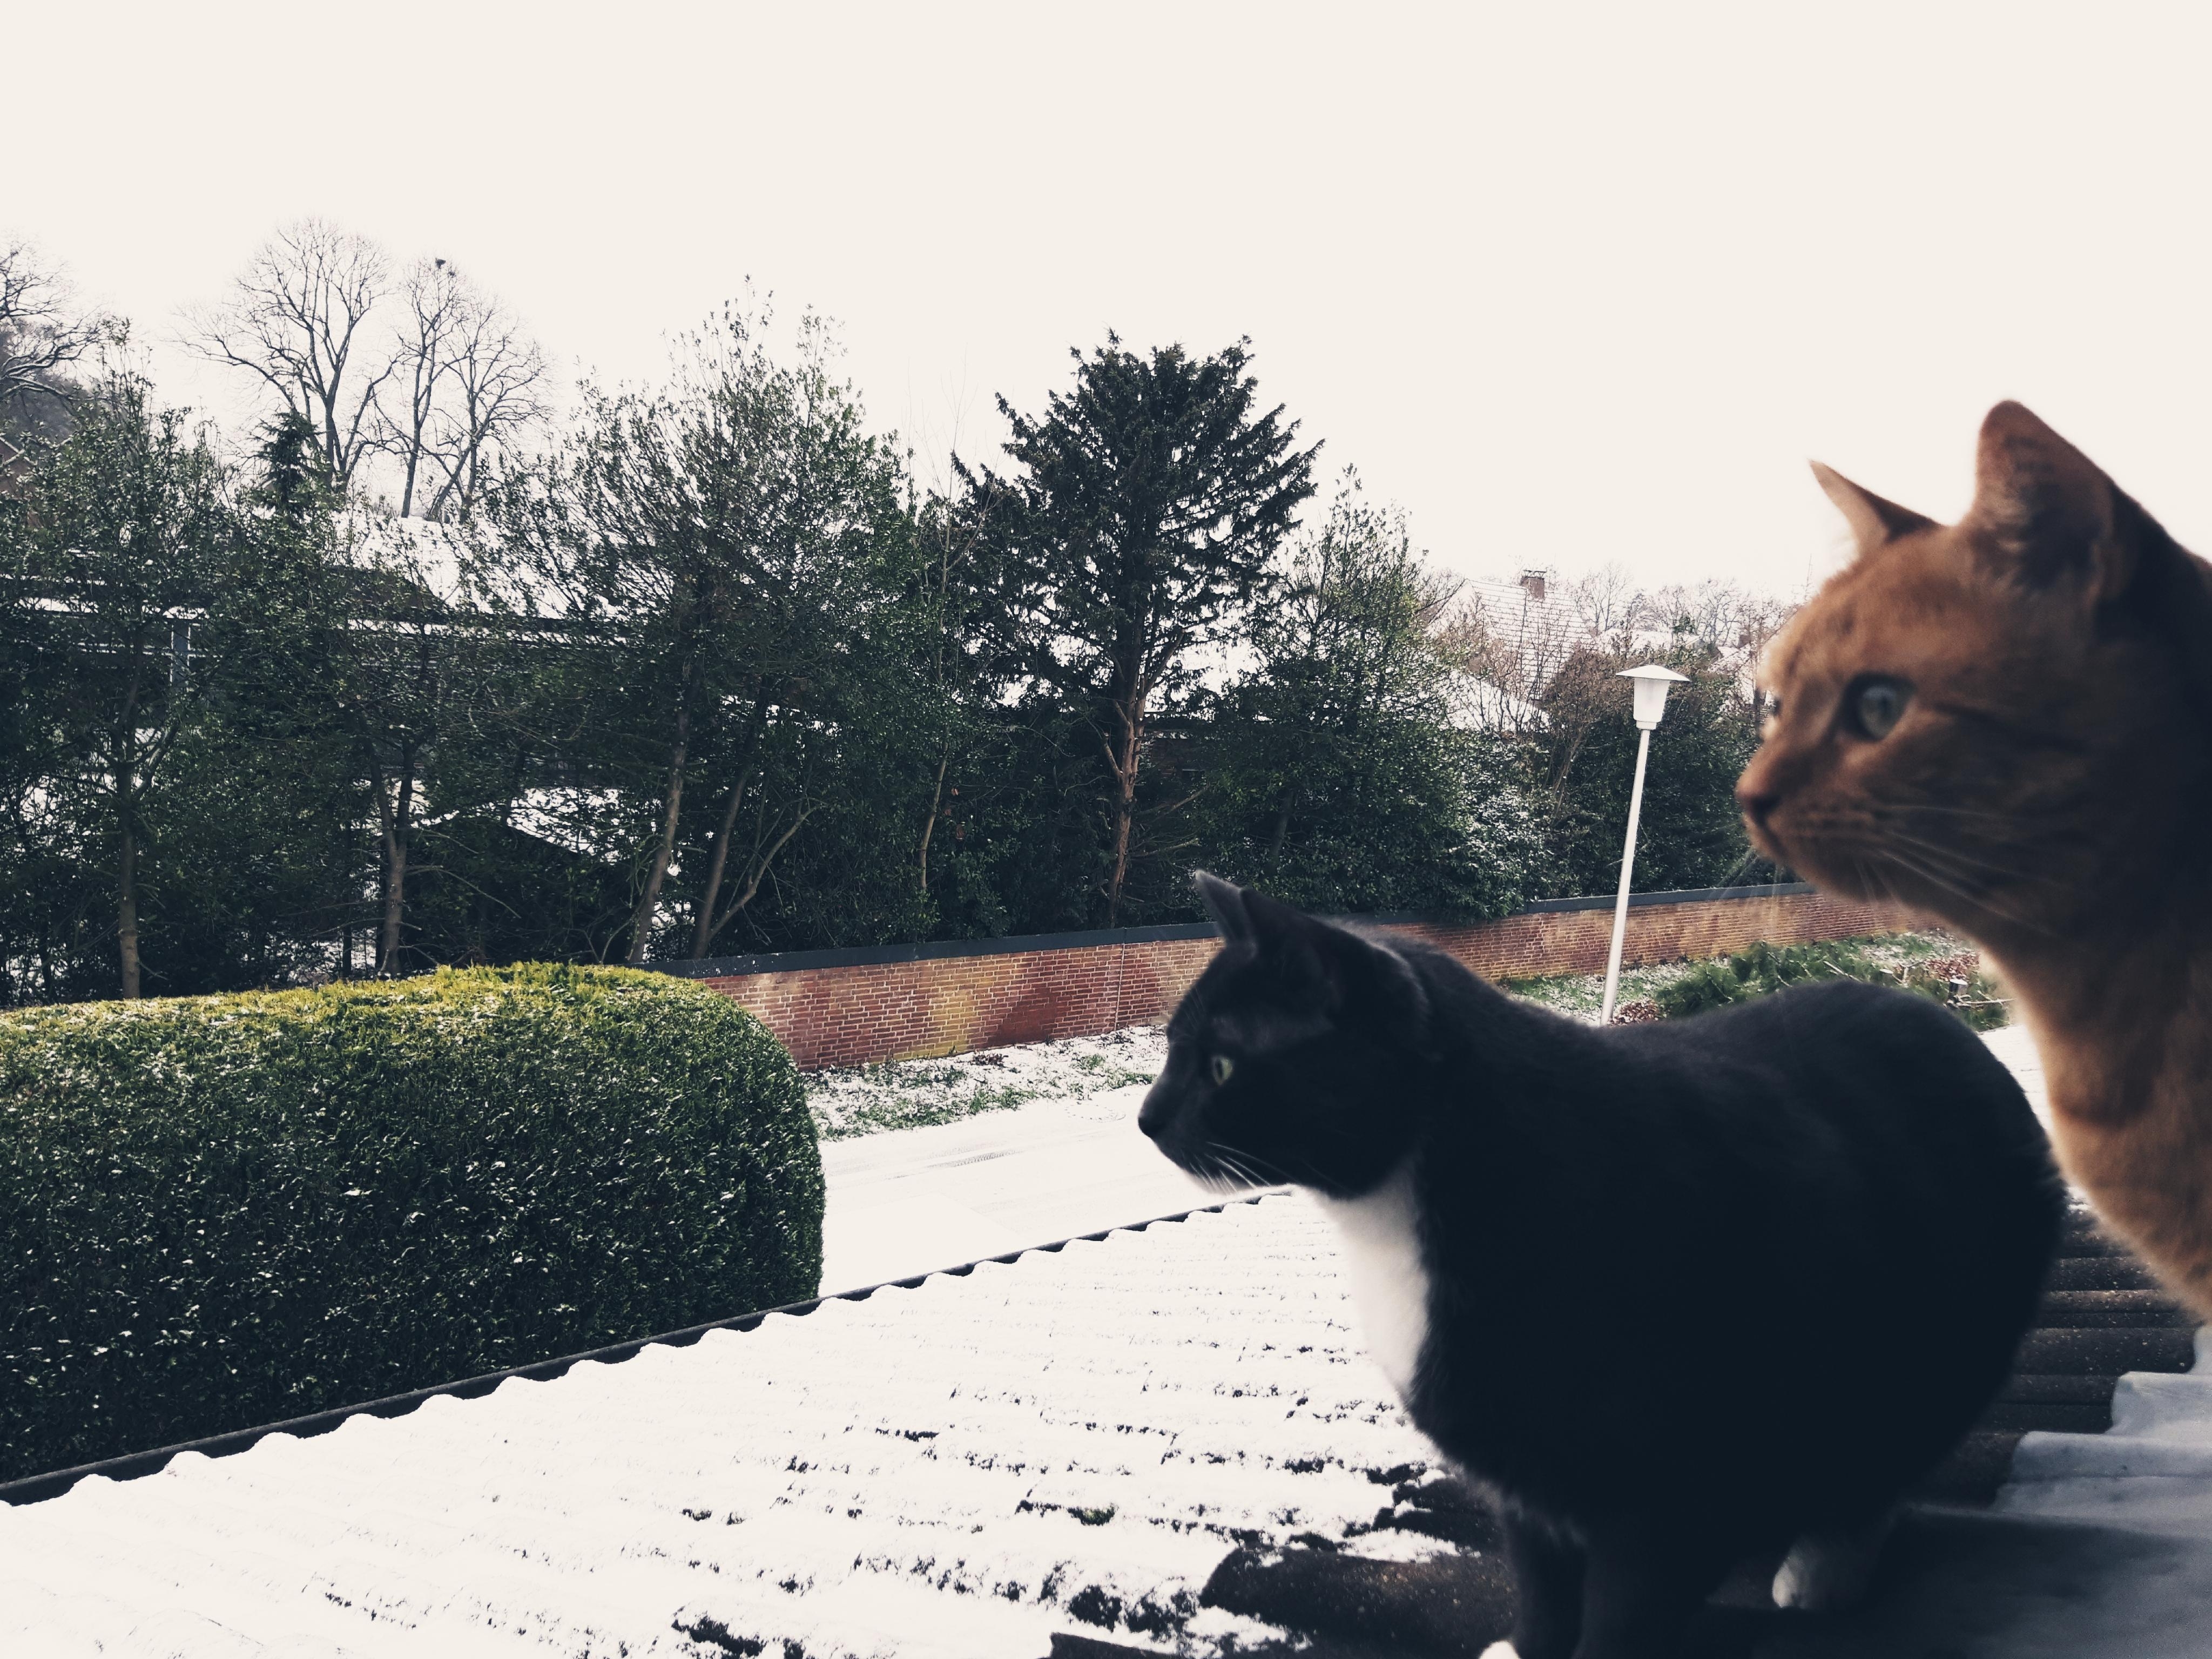 Schnee erfüllt den Ort...
#Schnee 
#Katzen